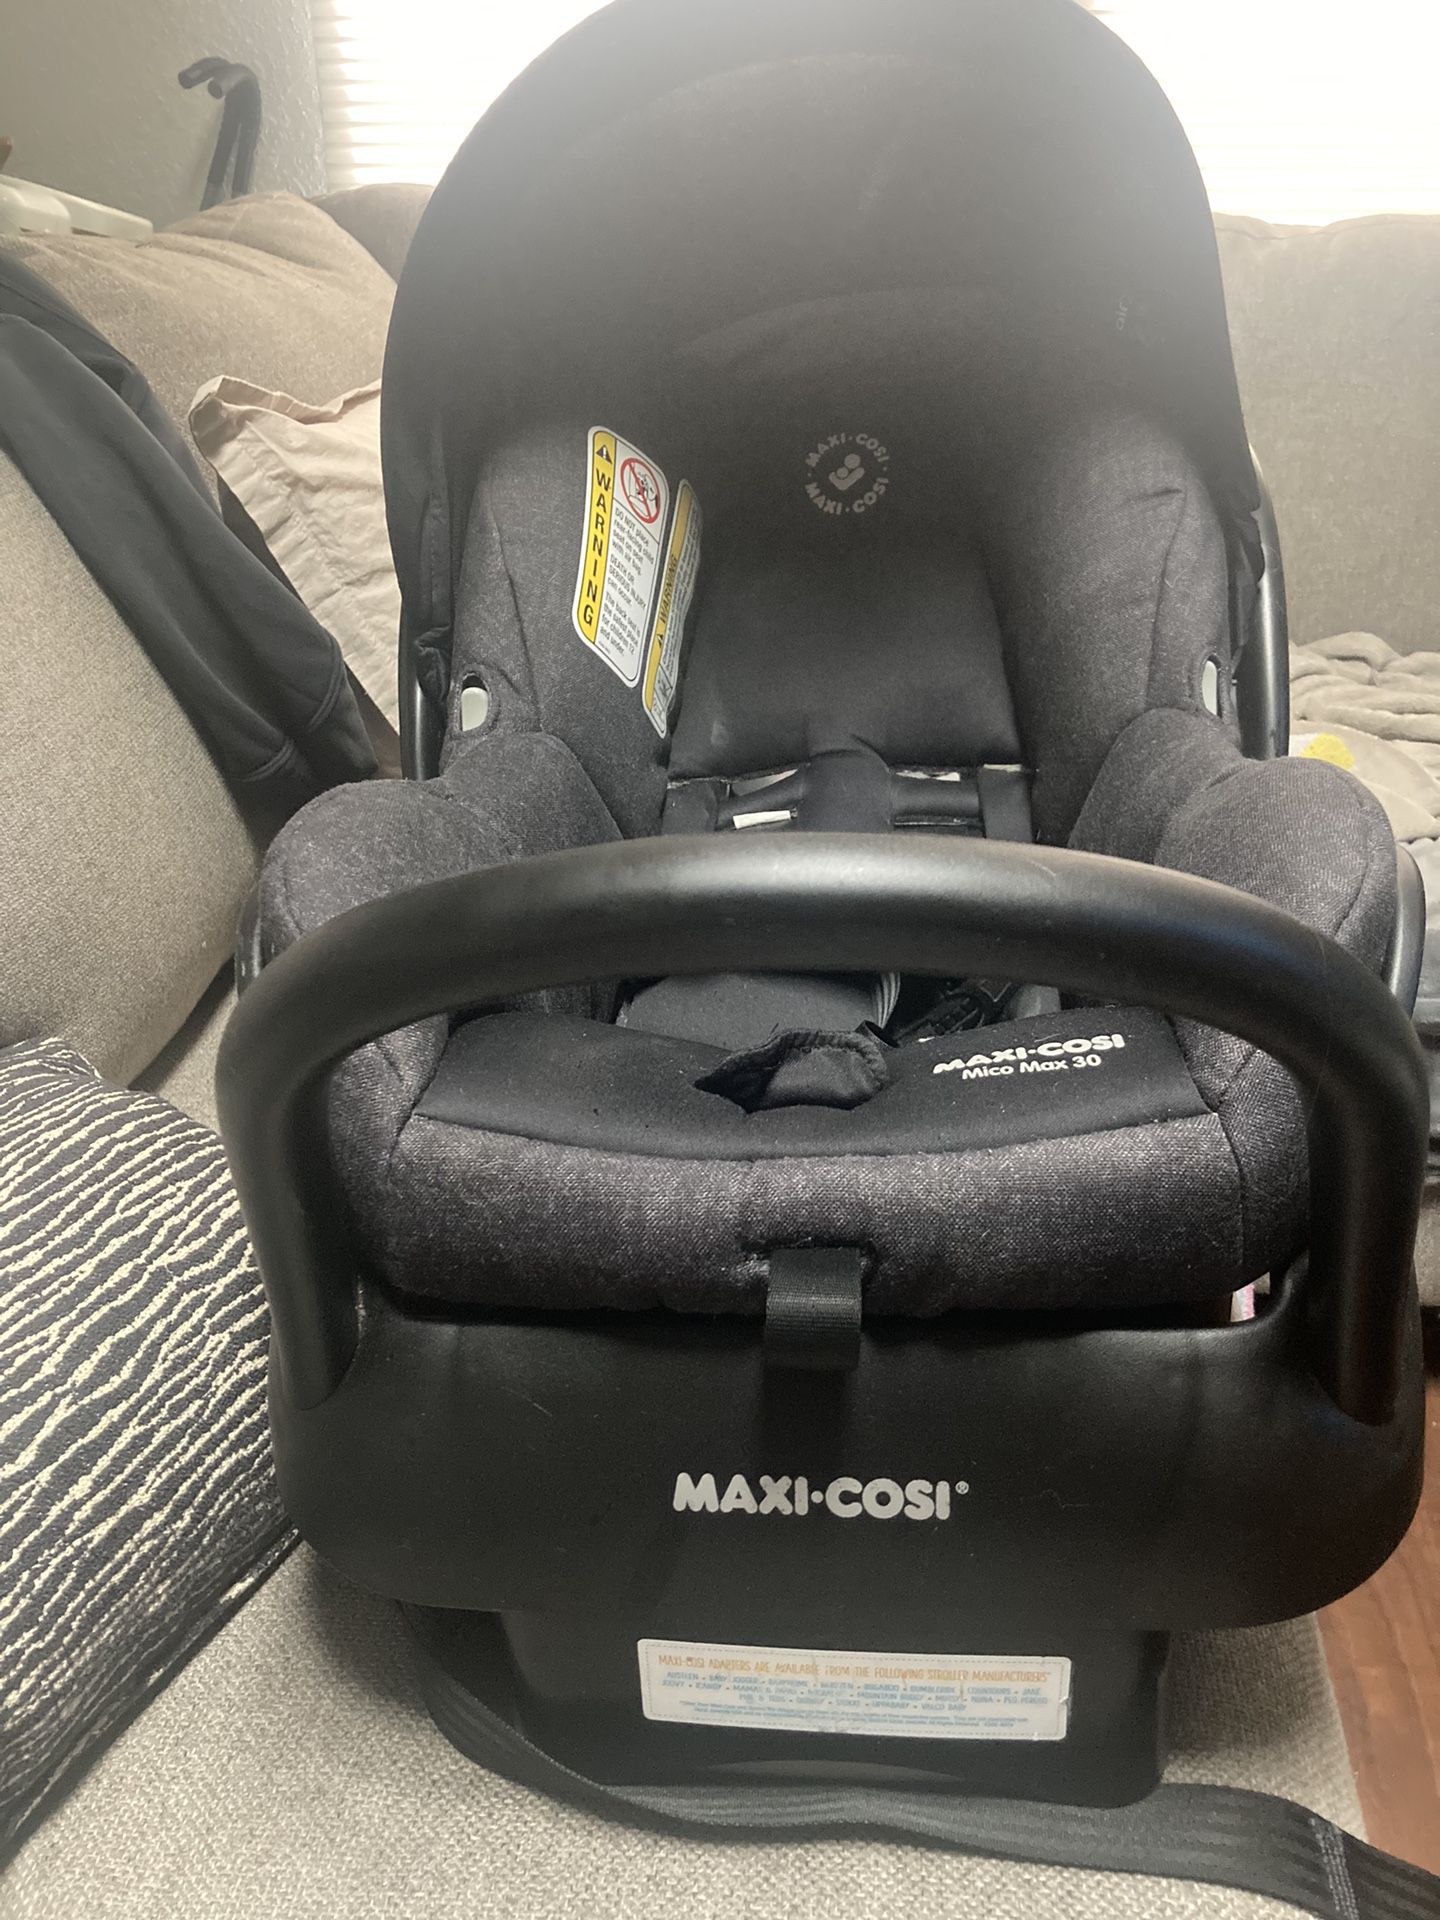 New Maxi Cosi Car Seat